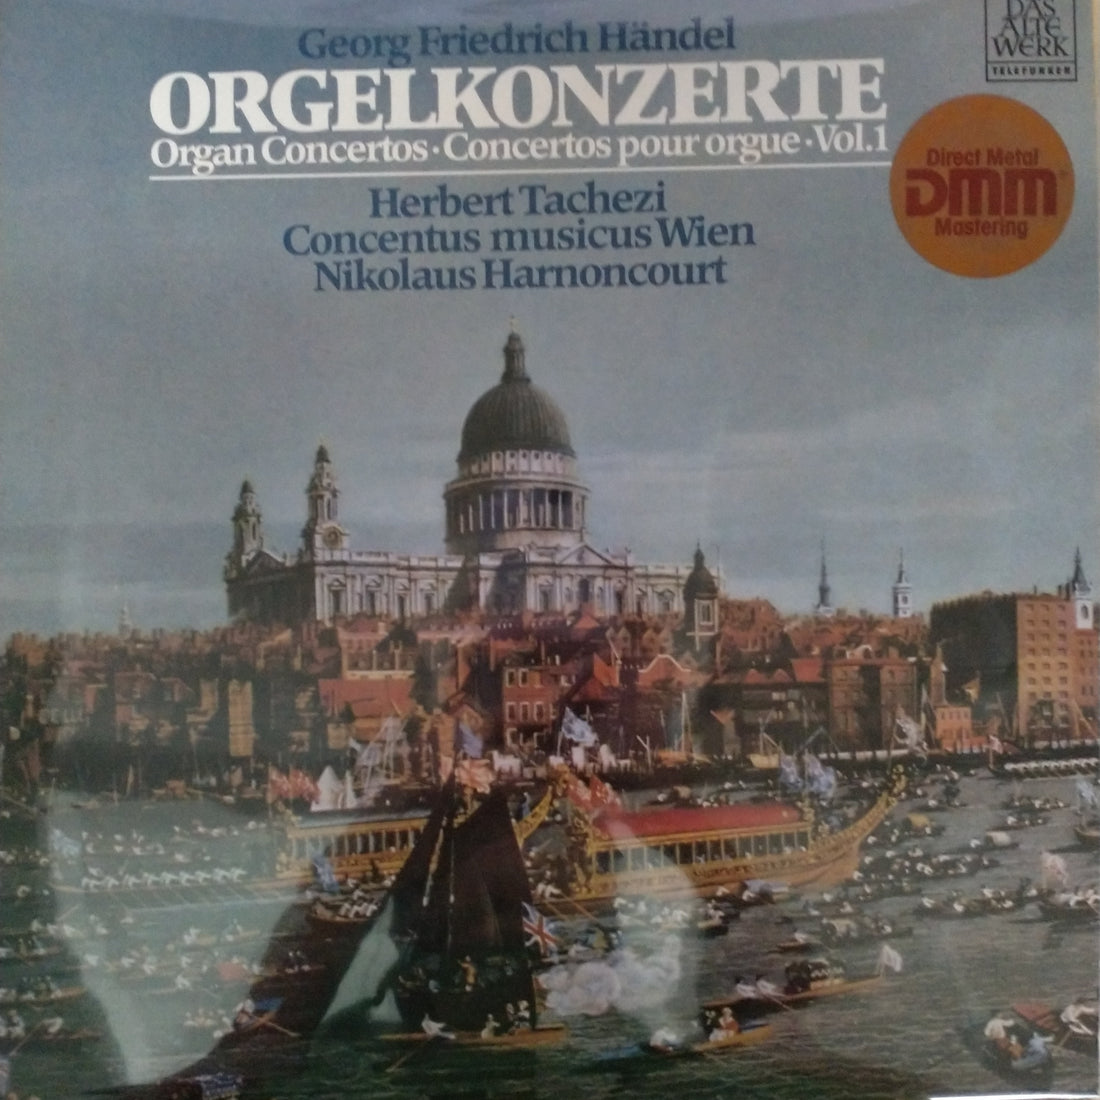 Georg Friedrich Händel - Herbert Tachezi, Concentus Musicus Wien, Nikolaus Harnoncourt - Orgelkonzerte (Vol. 1) Op. 4, Nr. 1-4 (Vinyl) (VG+)